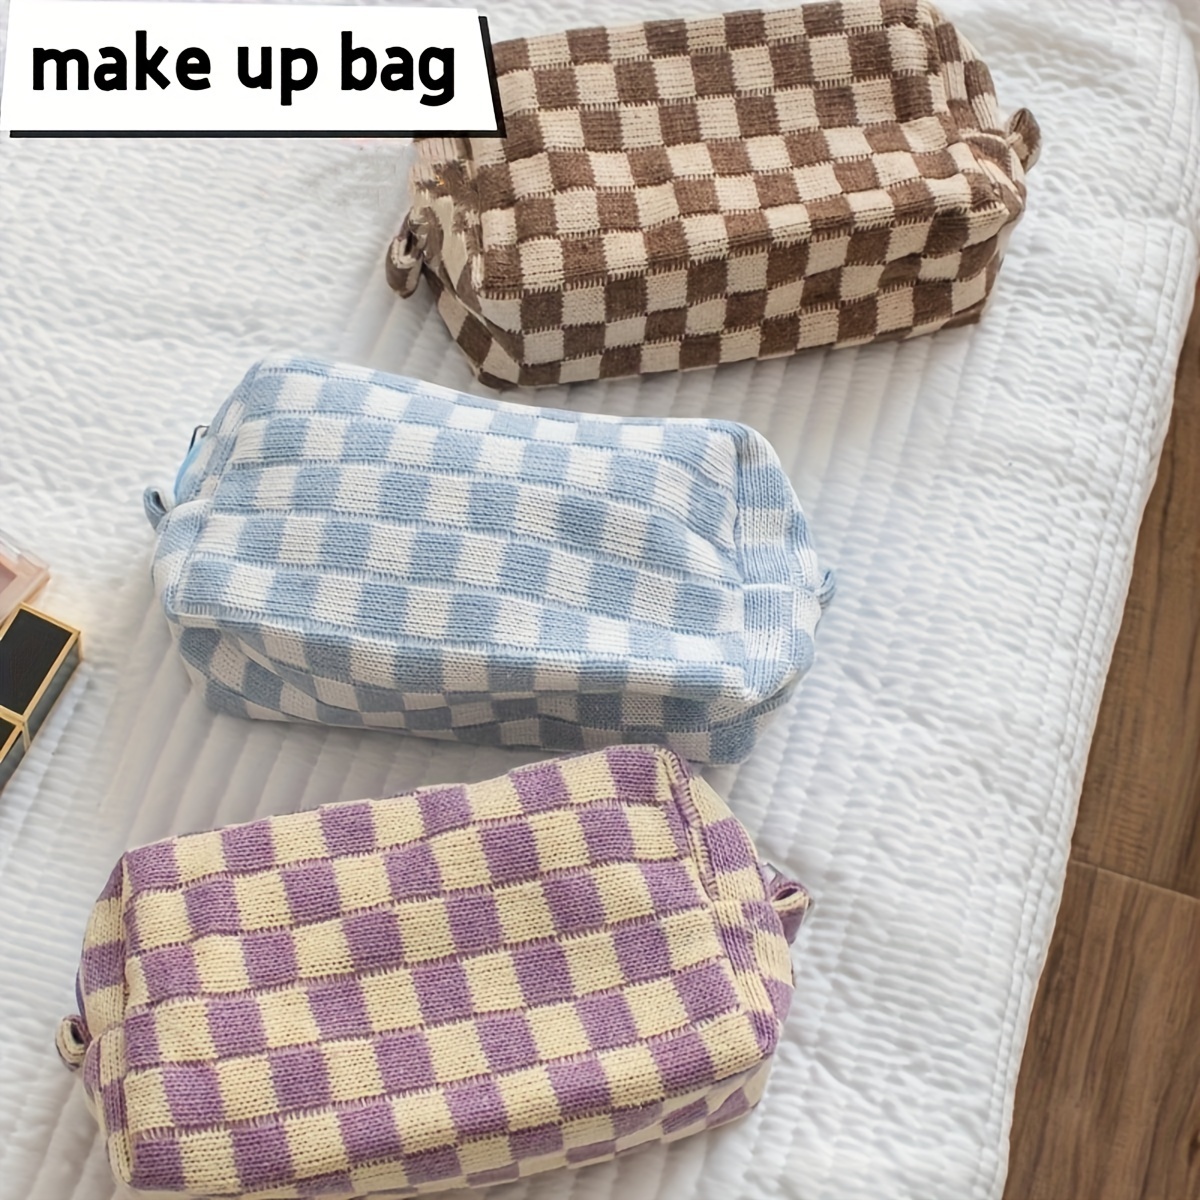 lv makeup bag travel cosmetic bag